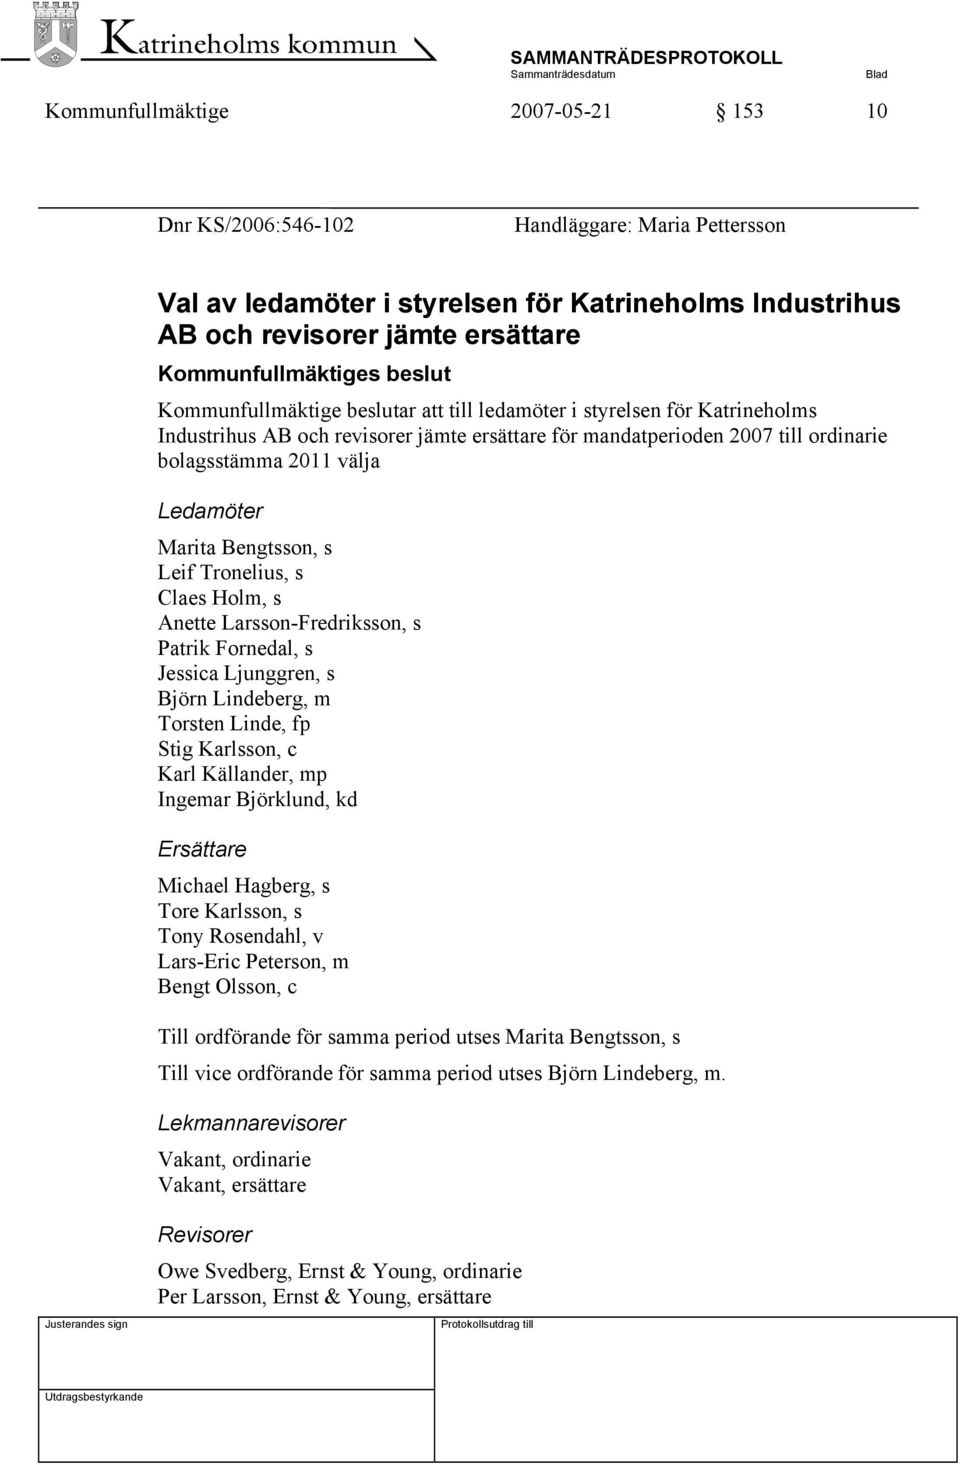 Marita Bengtsson, s Leif Tronelius, s Claes Holm, s Anette Larsson-Fredriksson, s Patrik Fornedal, s Jessica Ljunggren, s Björn Lindeberg, m Torsten Linde, fp Stig Karlsson, c Karl Källander, mp